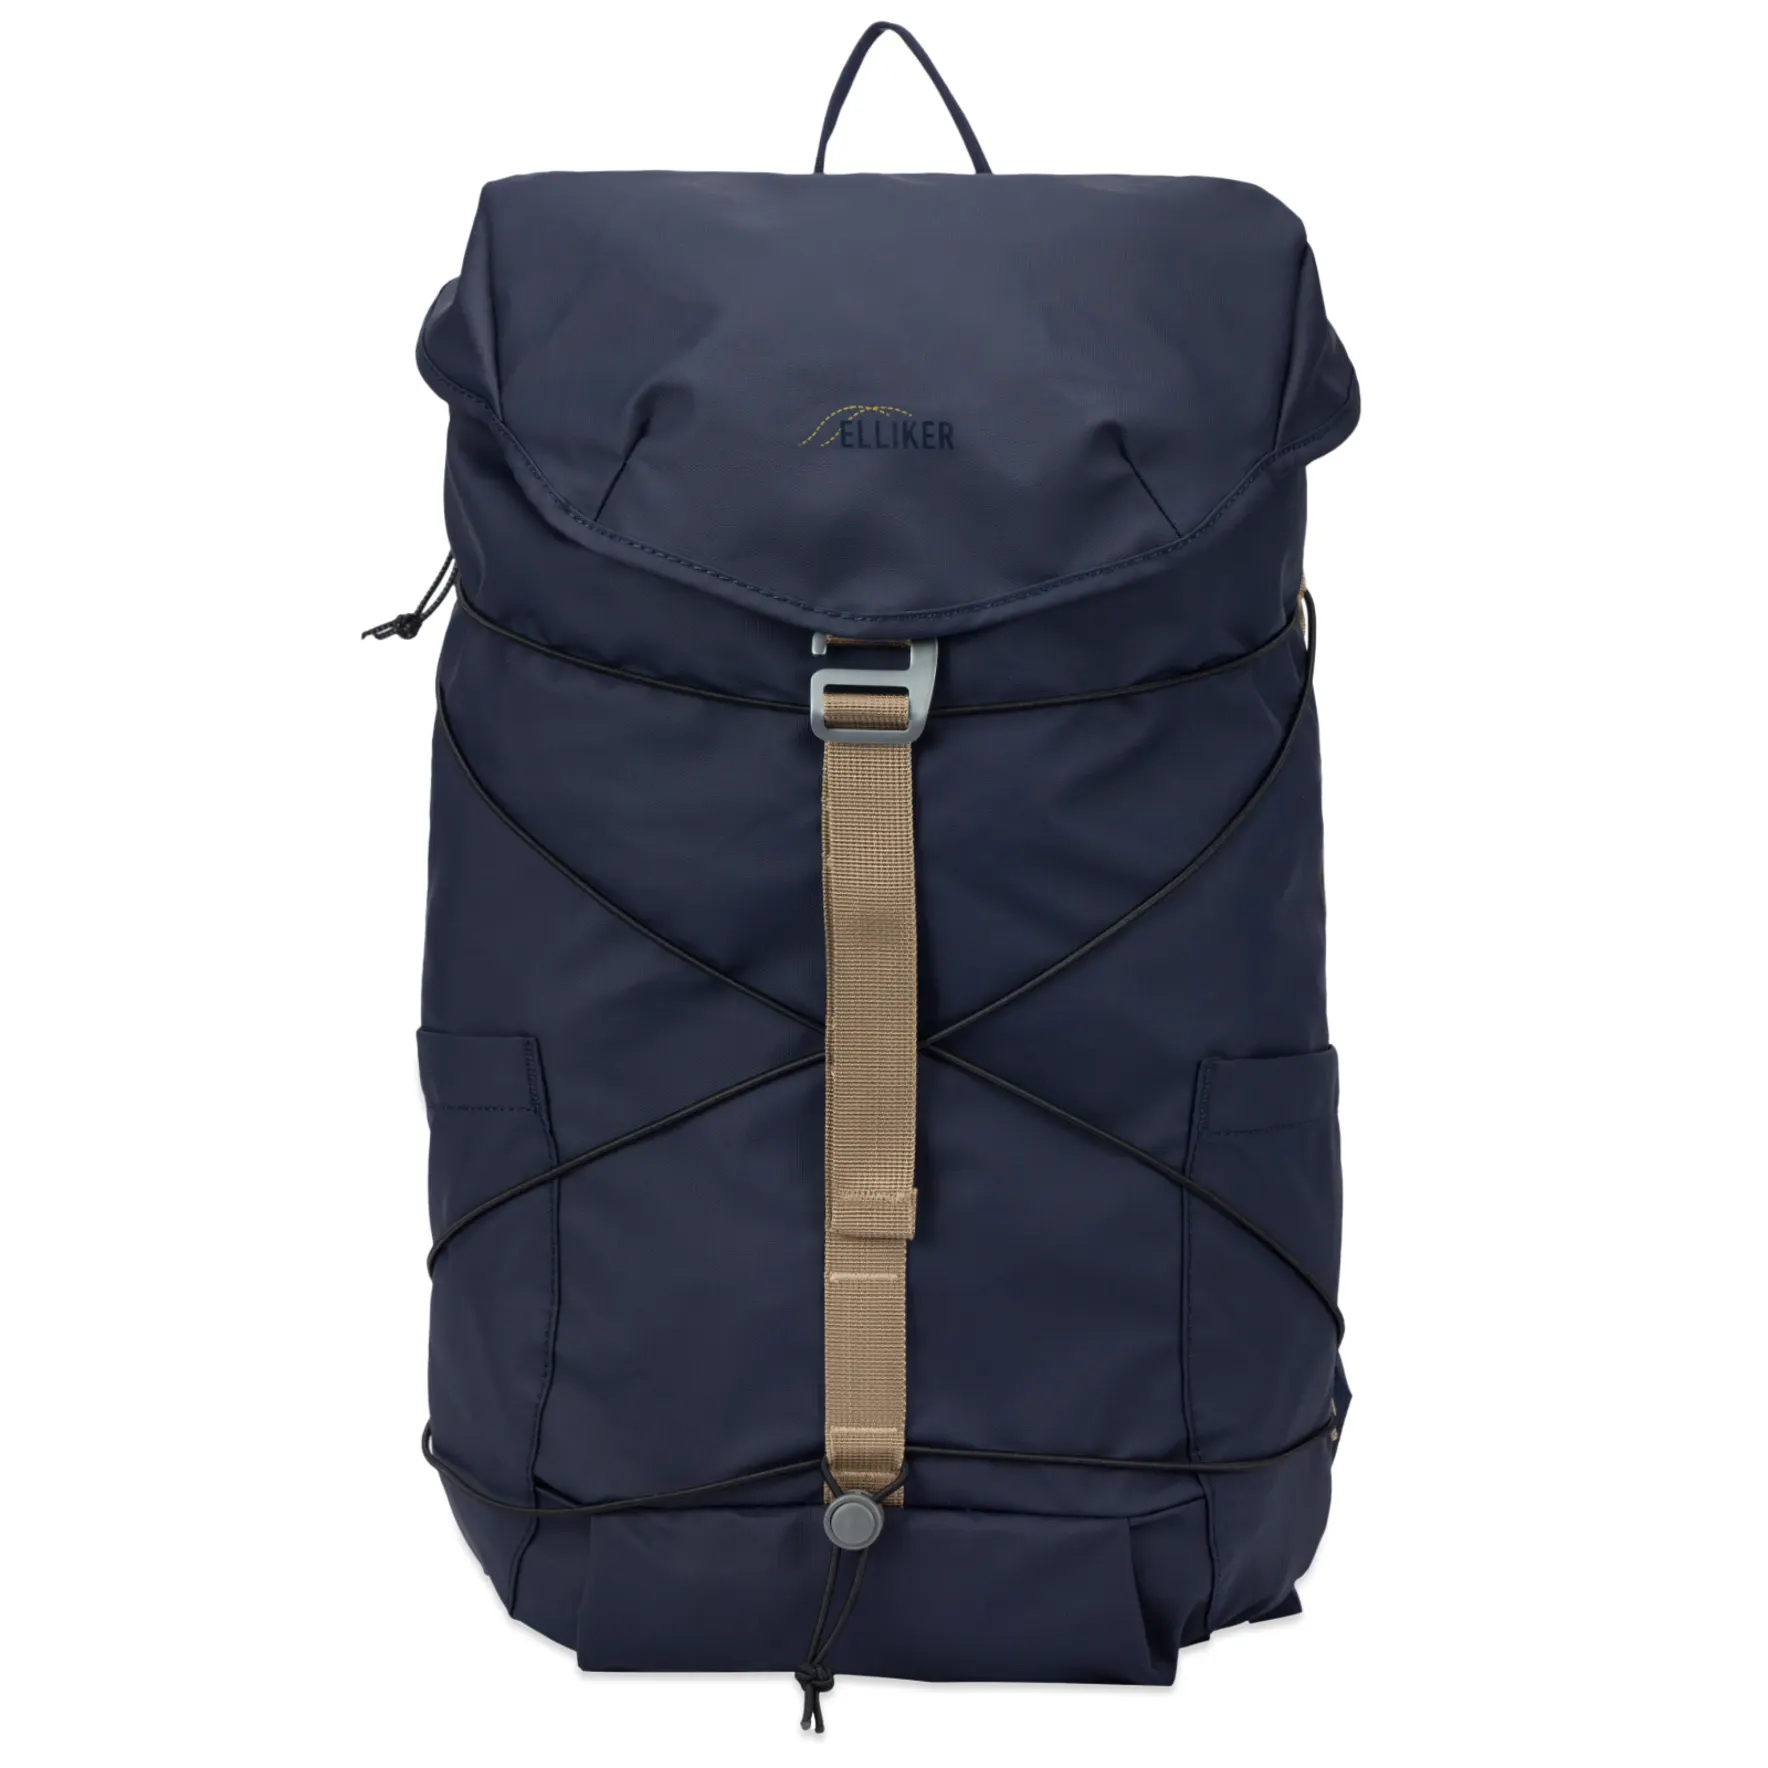 Рюкзак Elliker Wharfe Flapover Backpack, темно-синий рюкзак elliker dayle navy